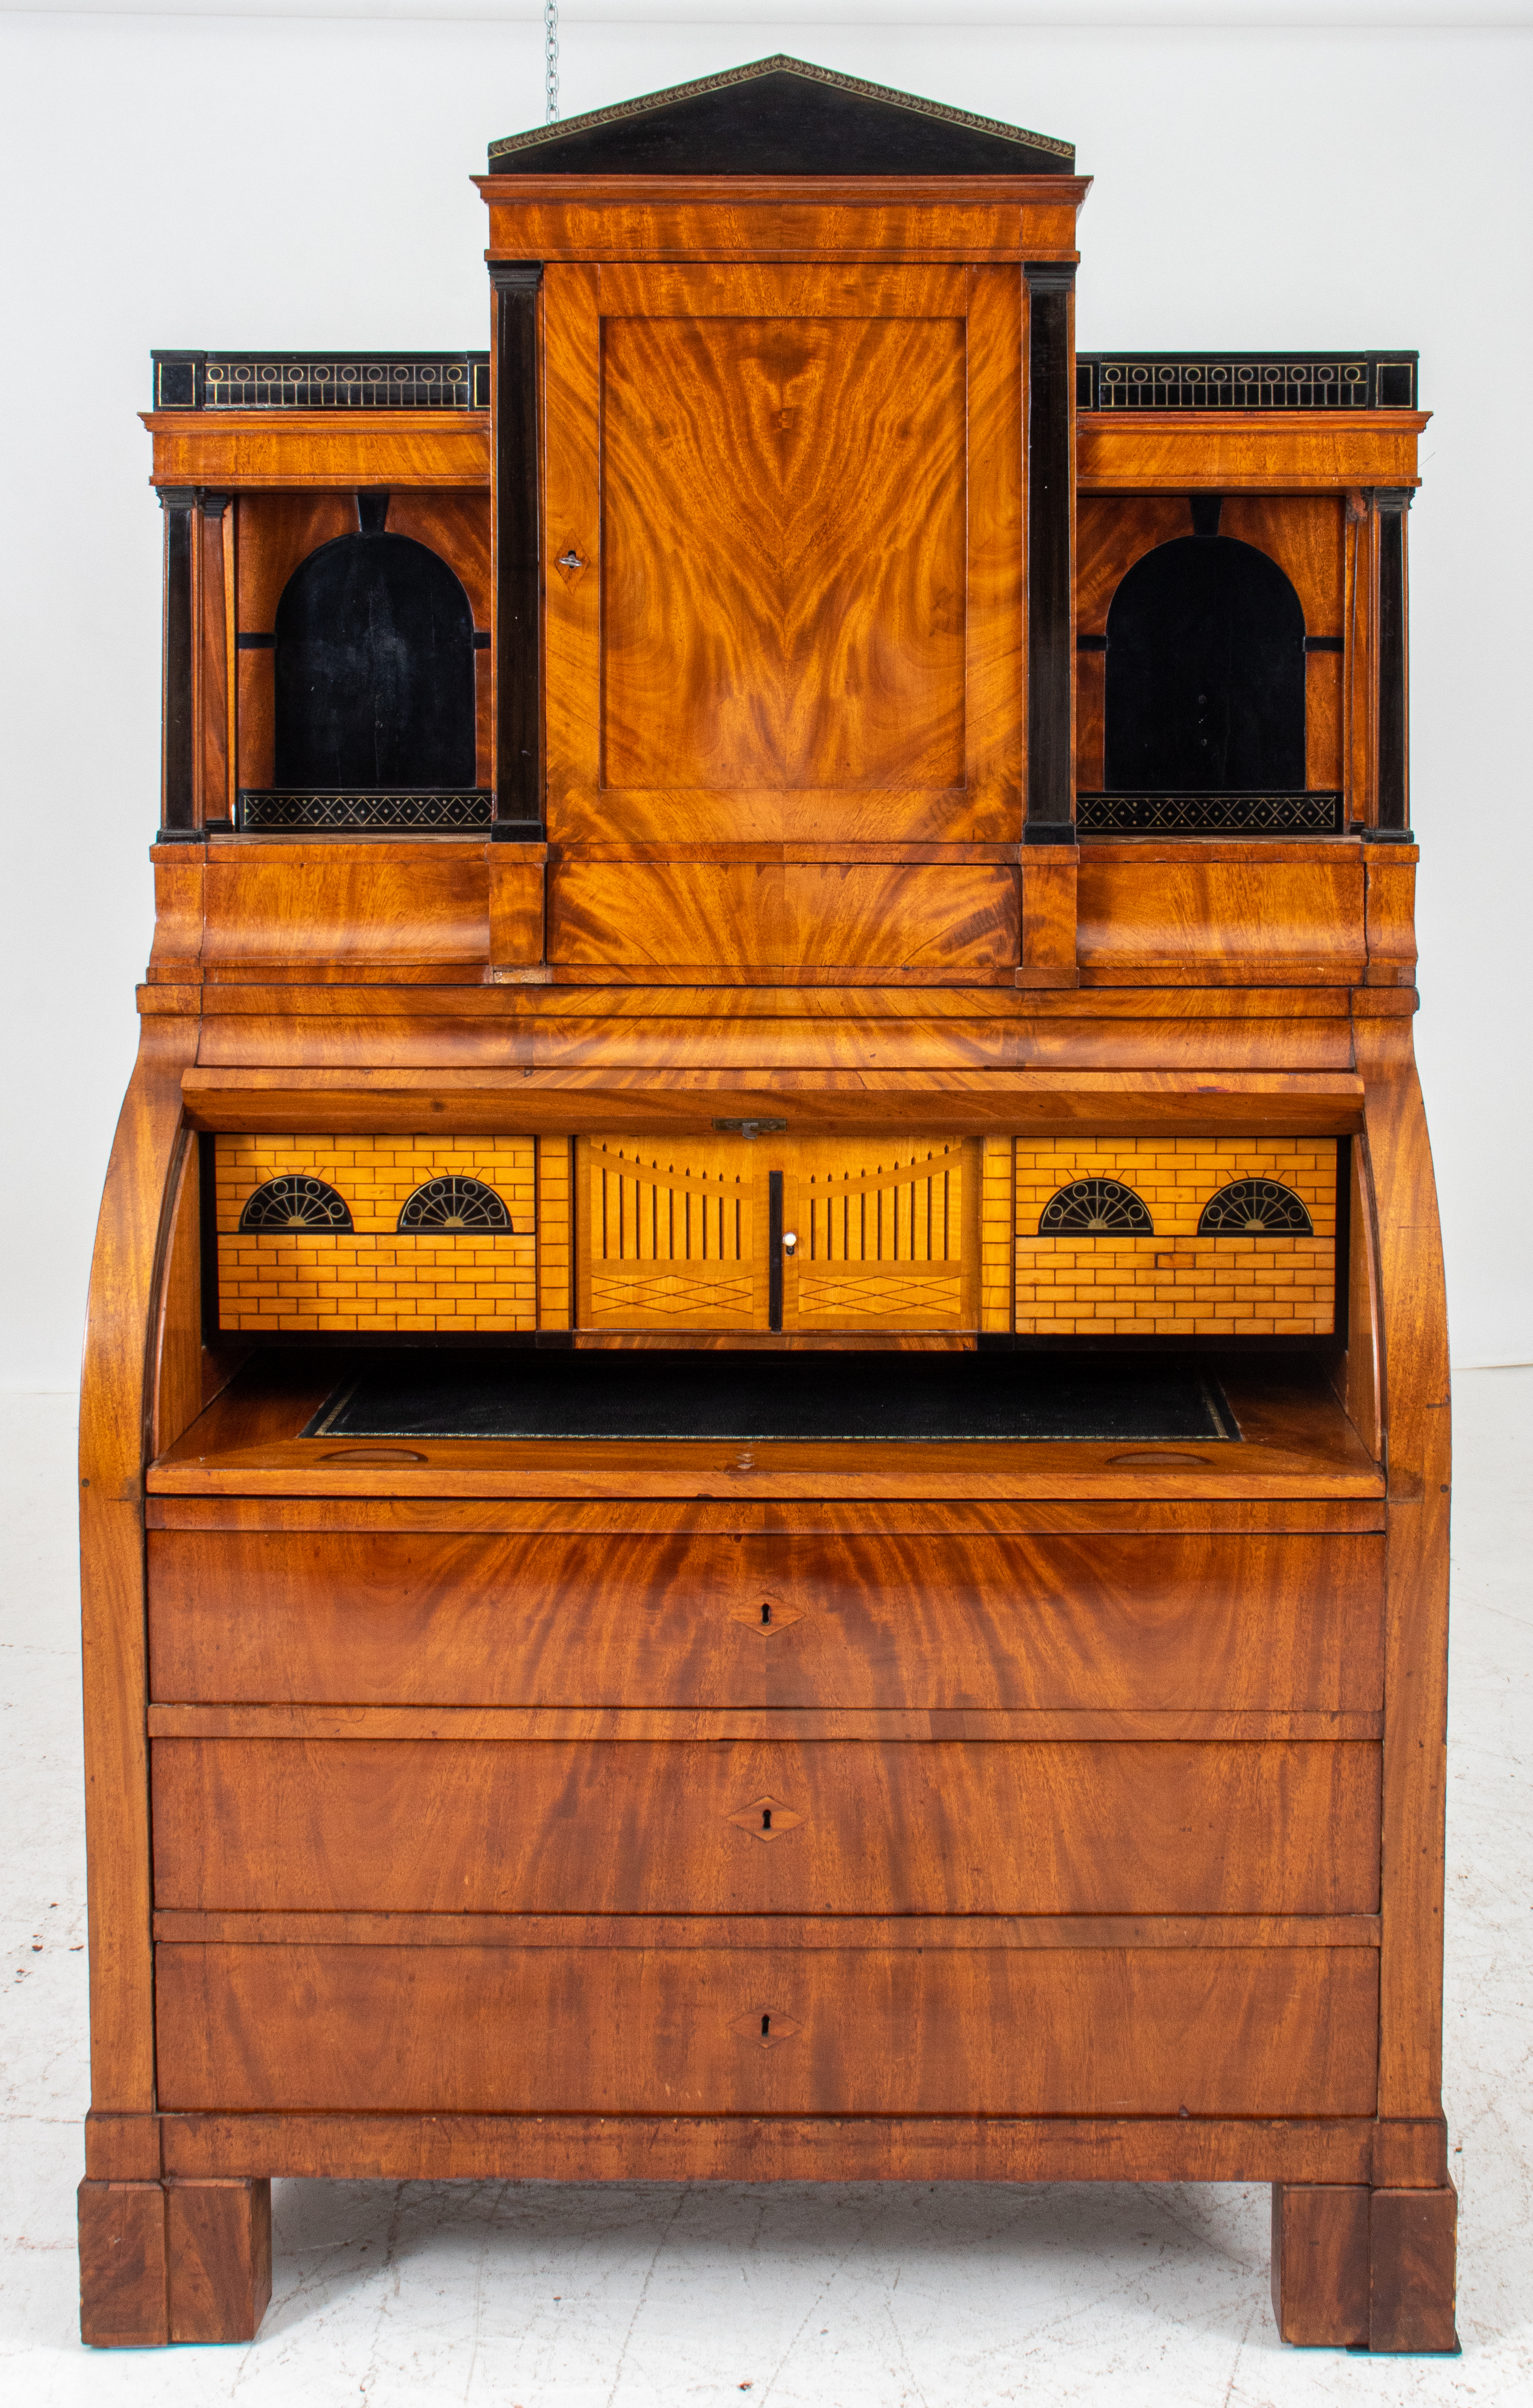  German Neoclassical mahogany desk-bureau, est. $2,000-$4,000